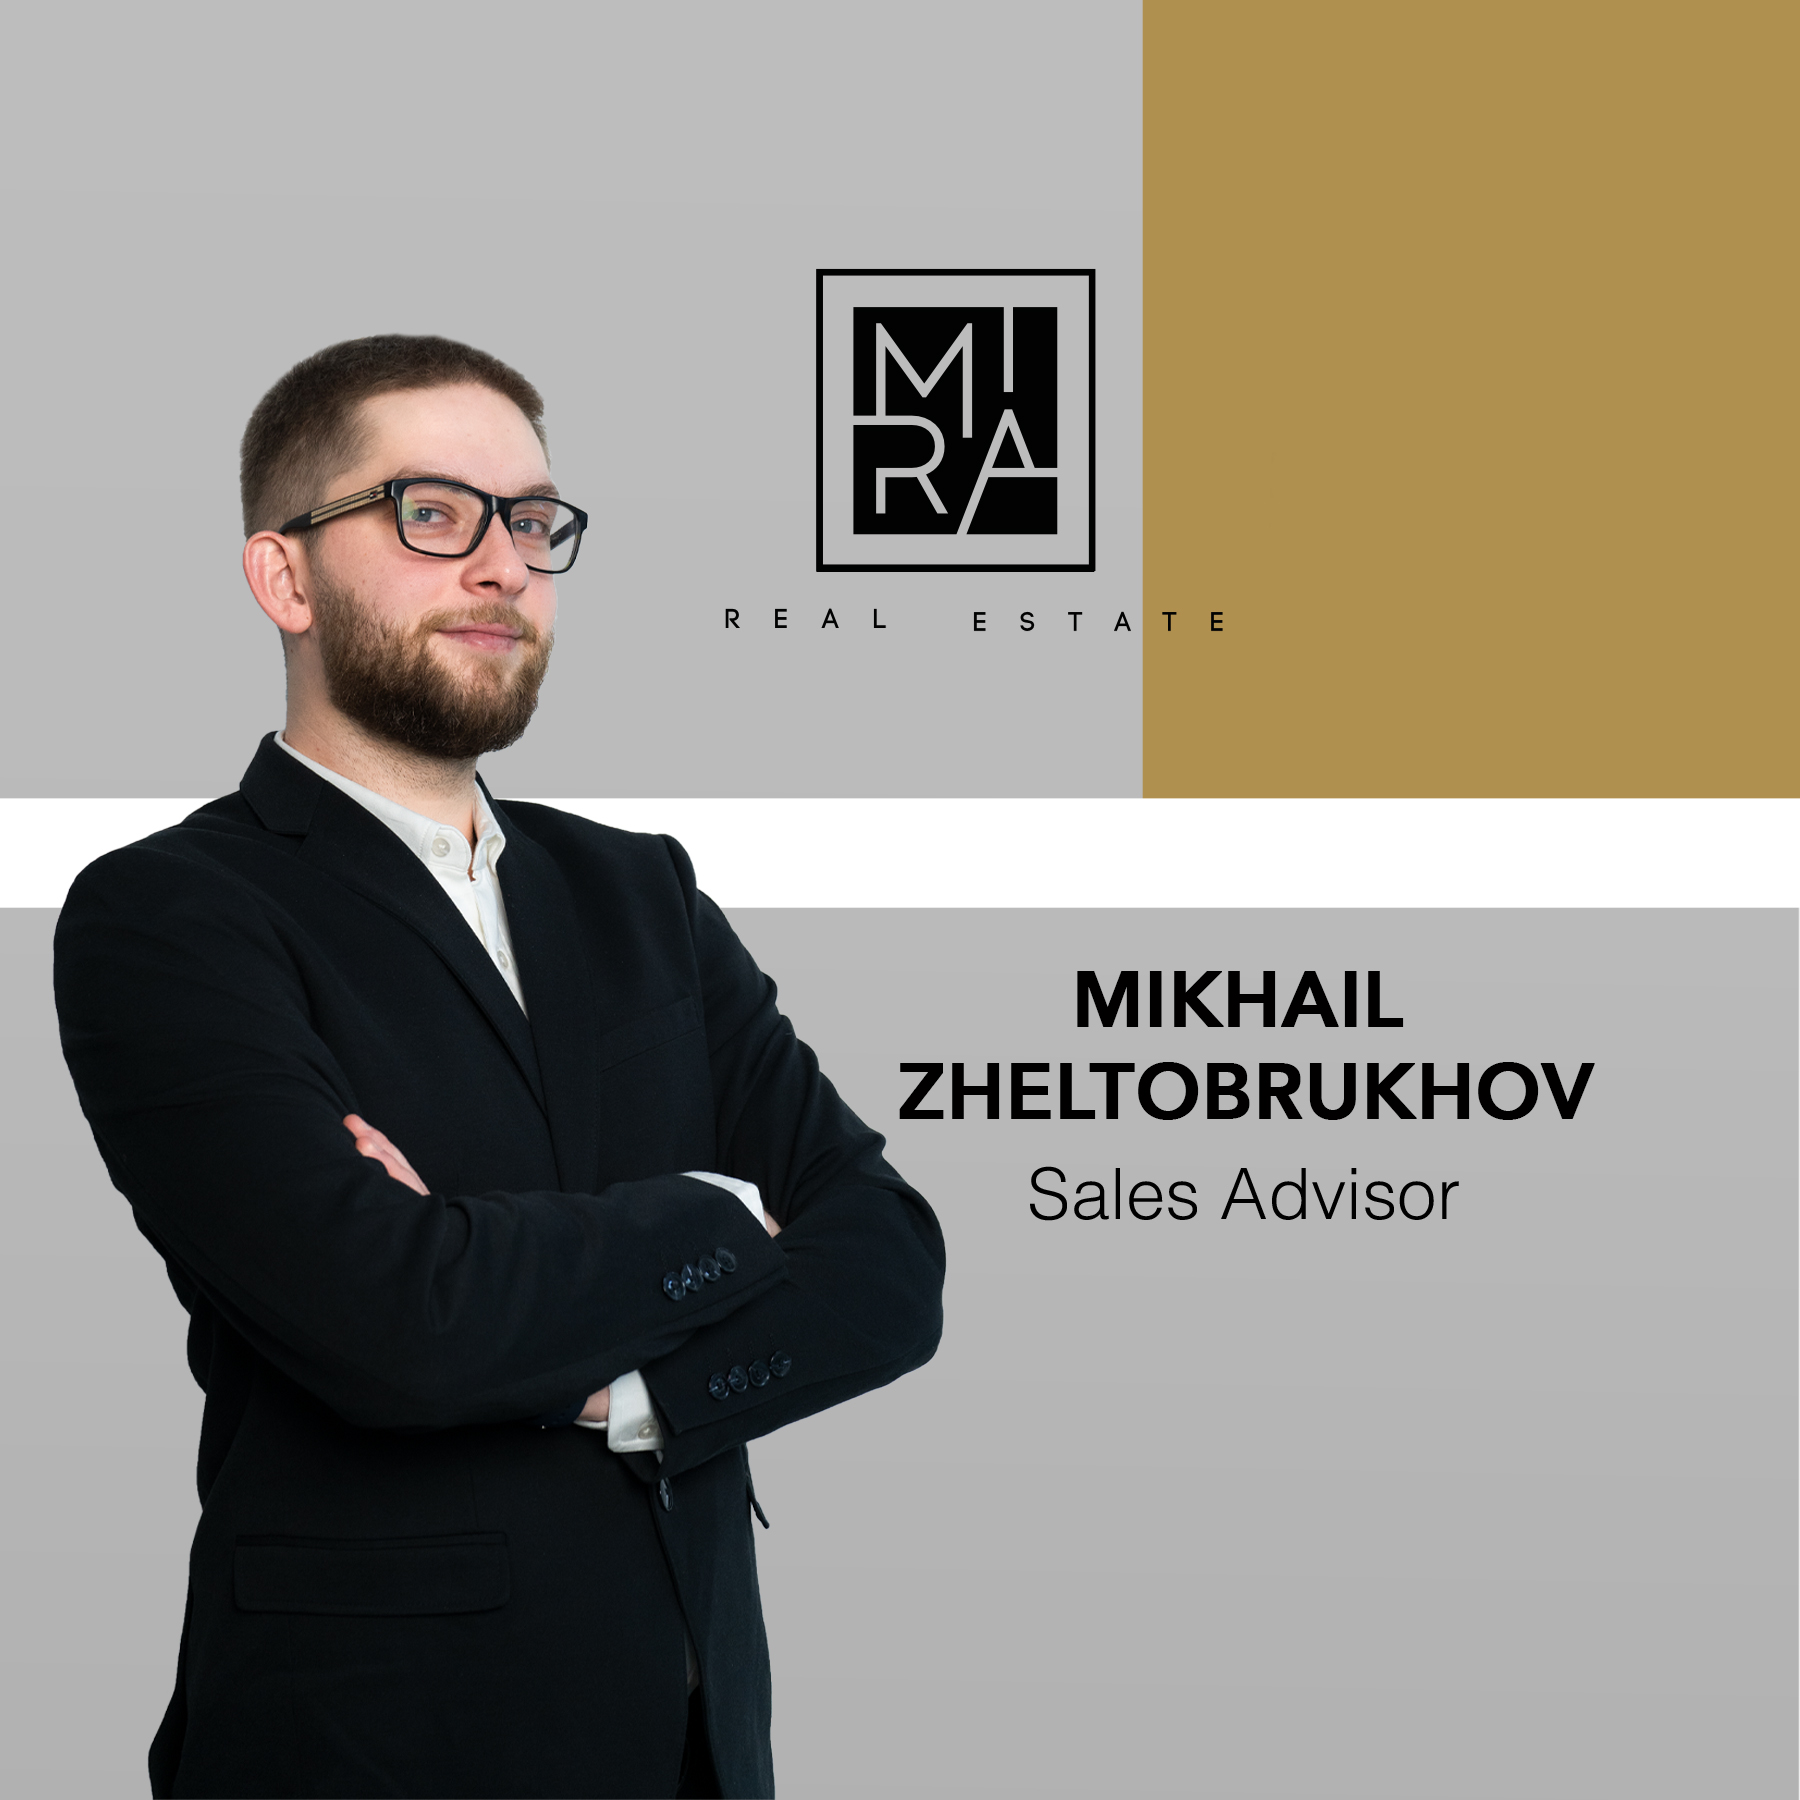 Mikhail Zheltobrukhov